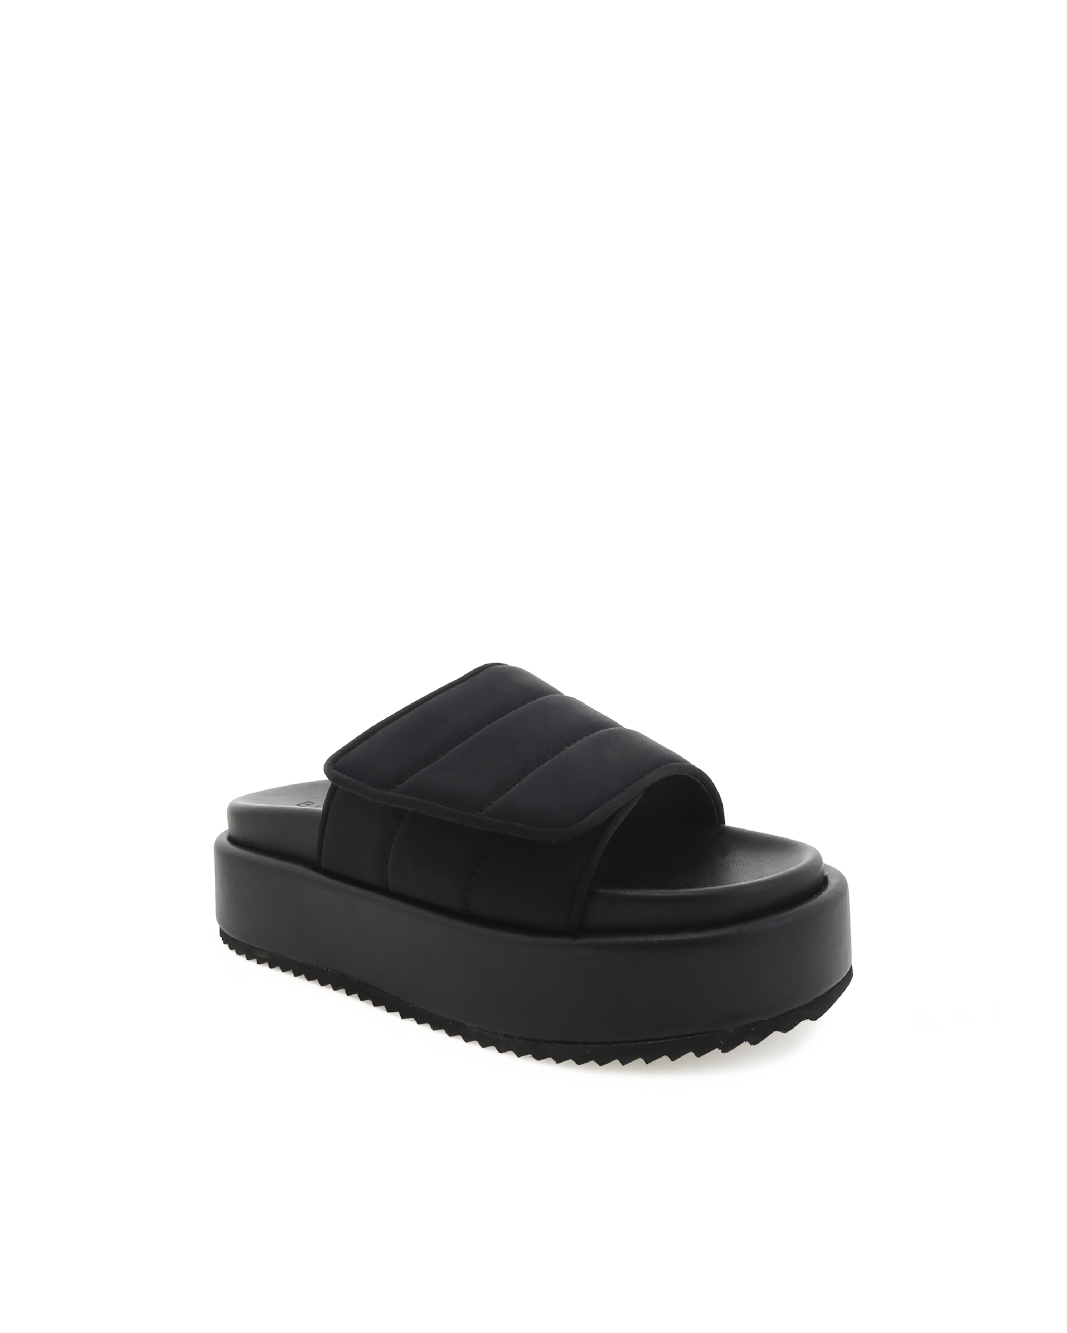 GALAXY - BLACK NEOPRENE-Sandals-Billini-Billini